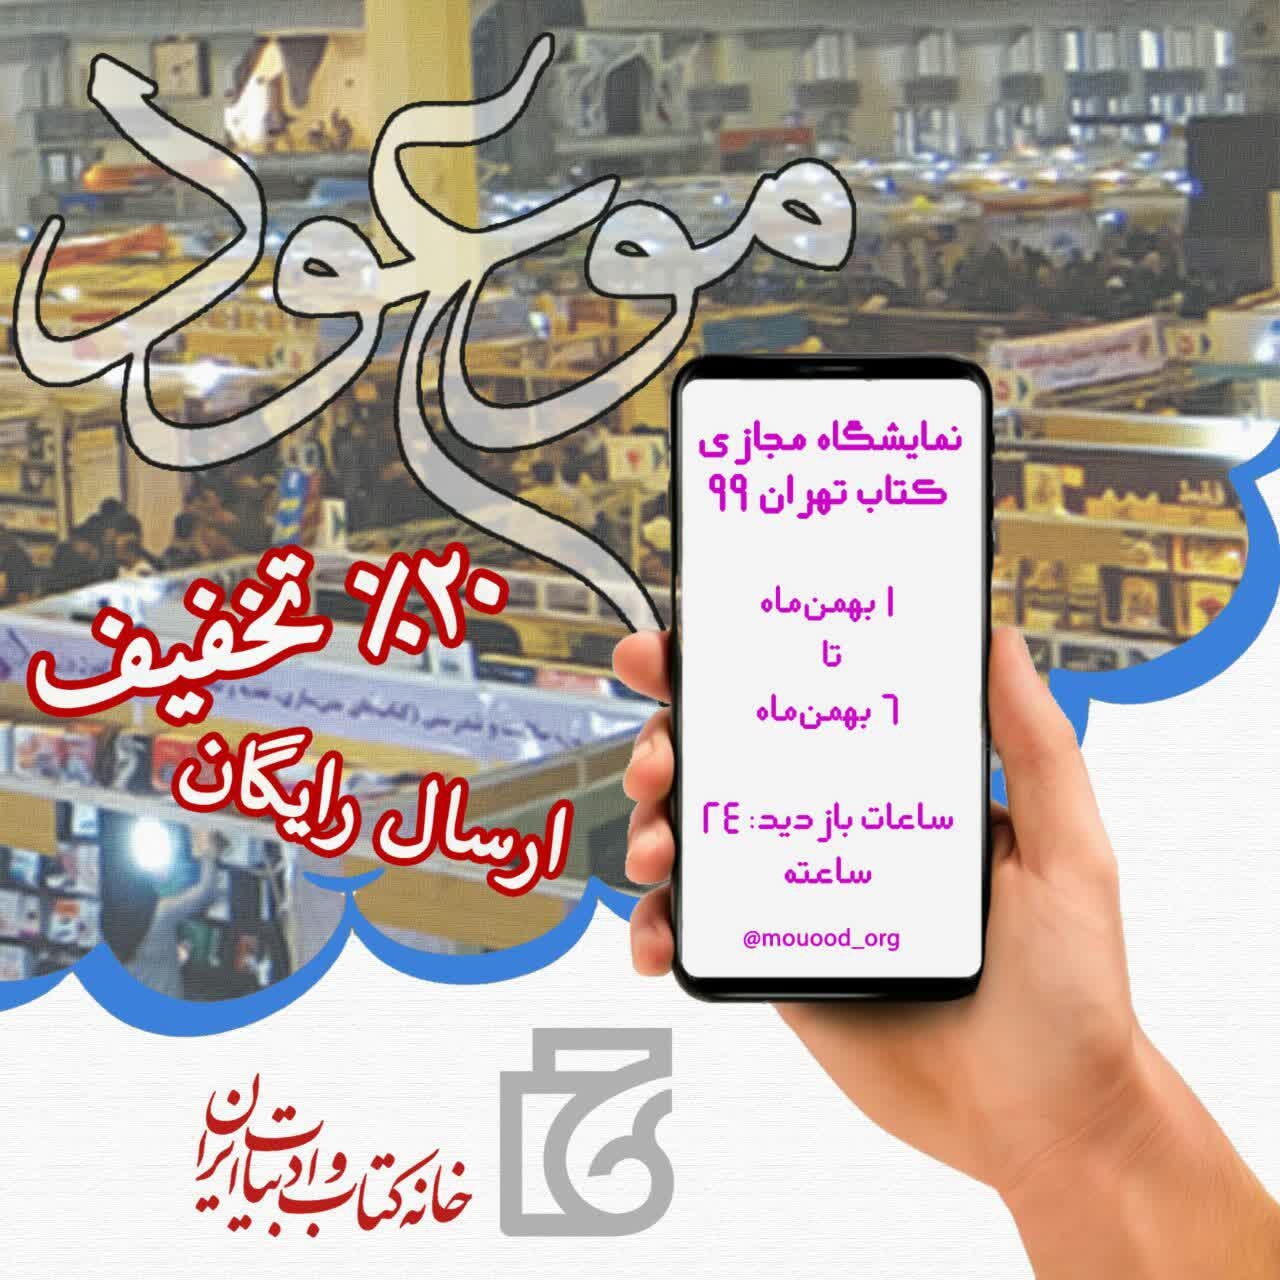 07e7ffee023e7a6032d0f34a4b7c9f8f - موعود و هلال در اولین نمایشگاه دیجیتال کتاب تهران